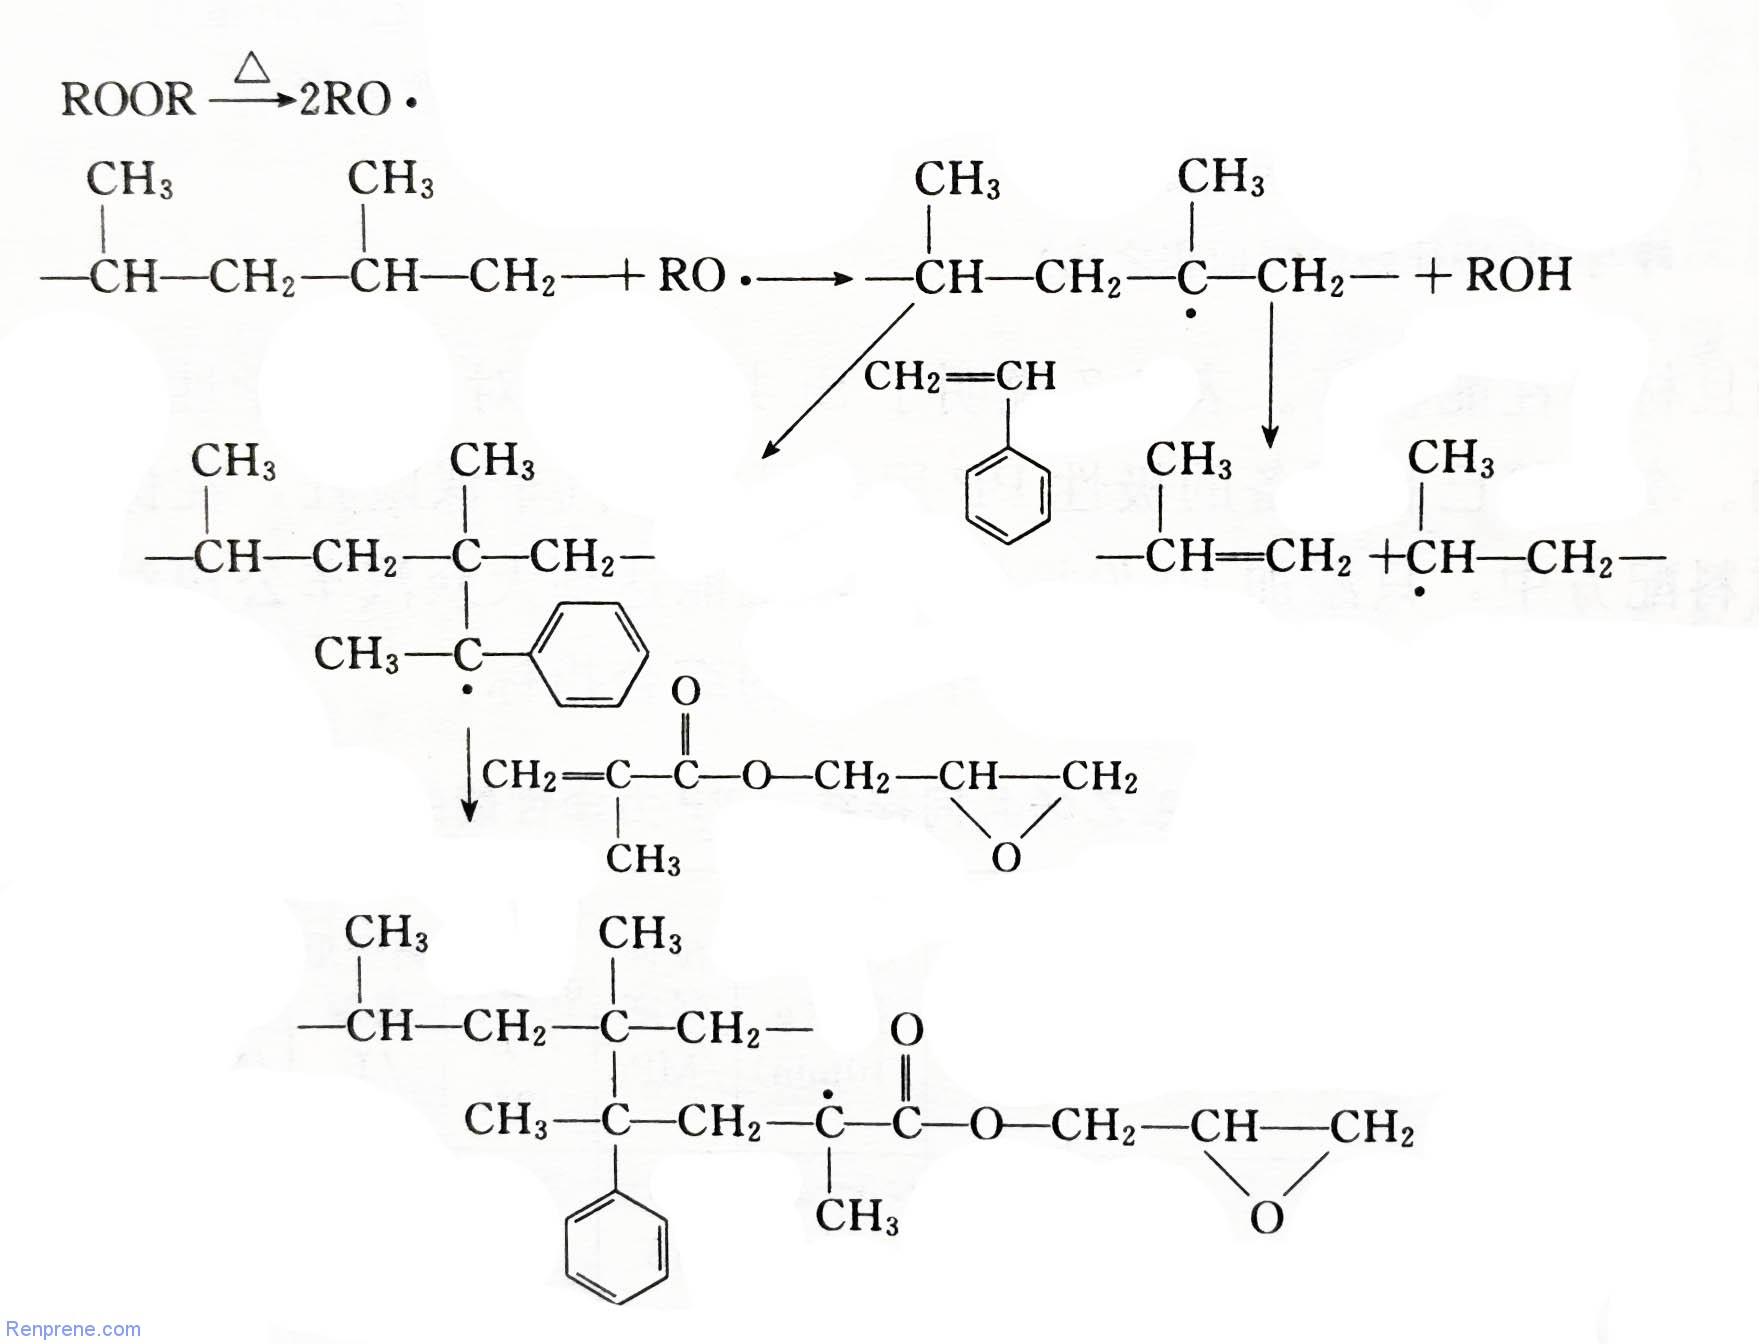 多单体接枝聚丙烯的机理及共单体的作用机制